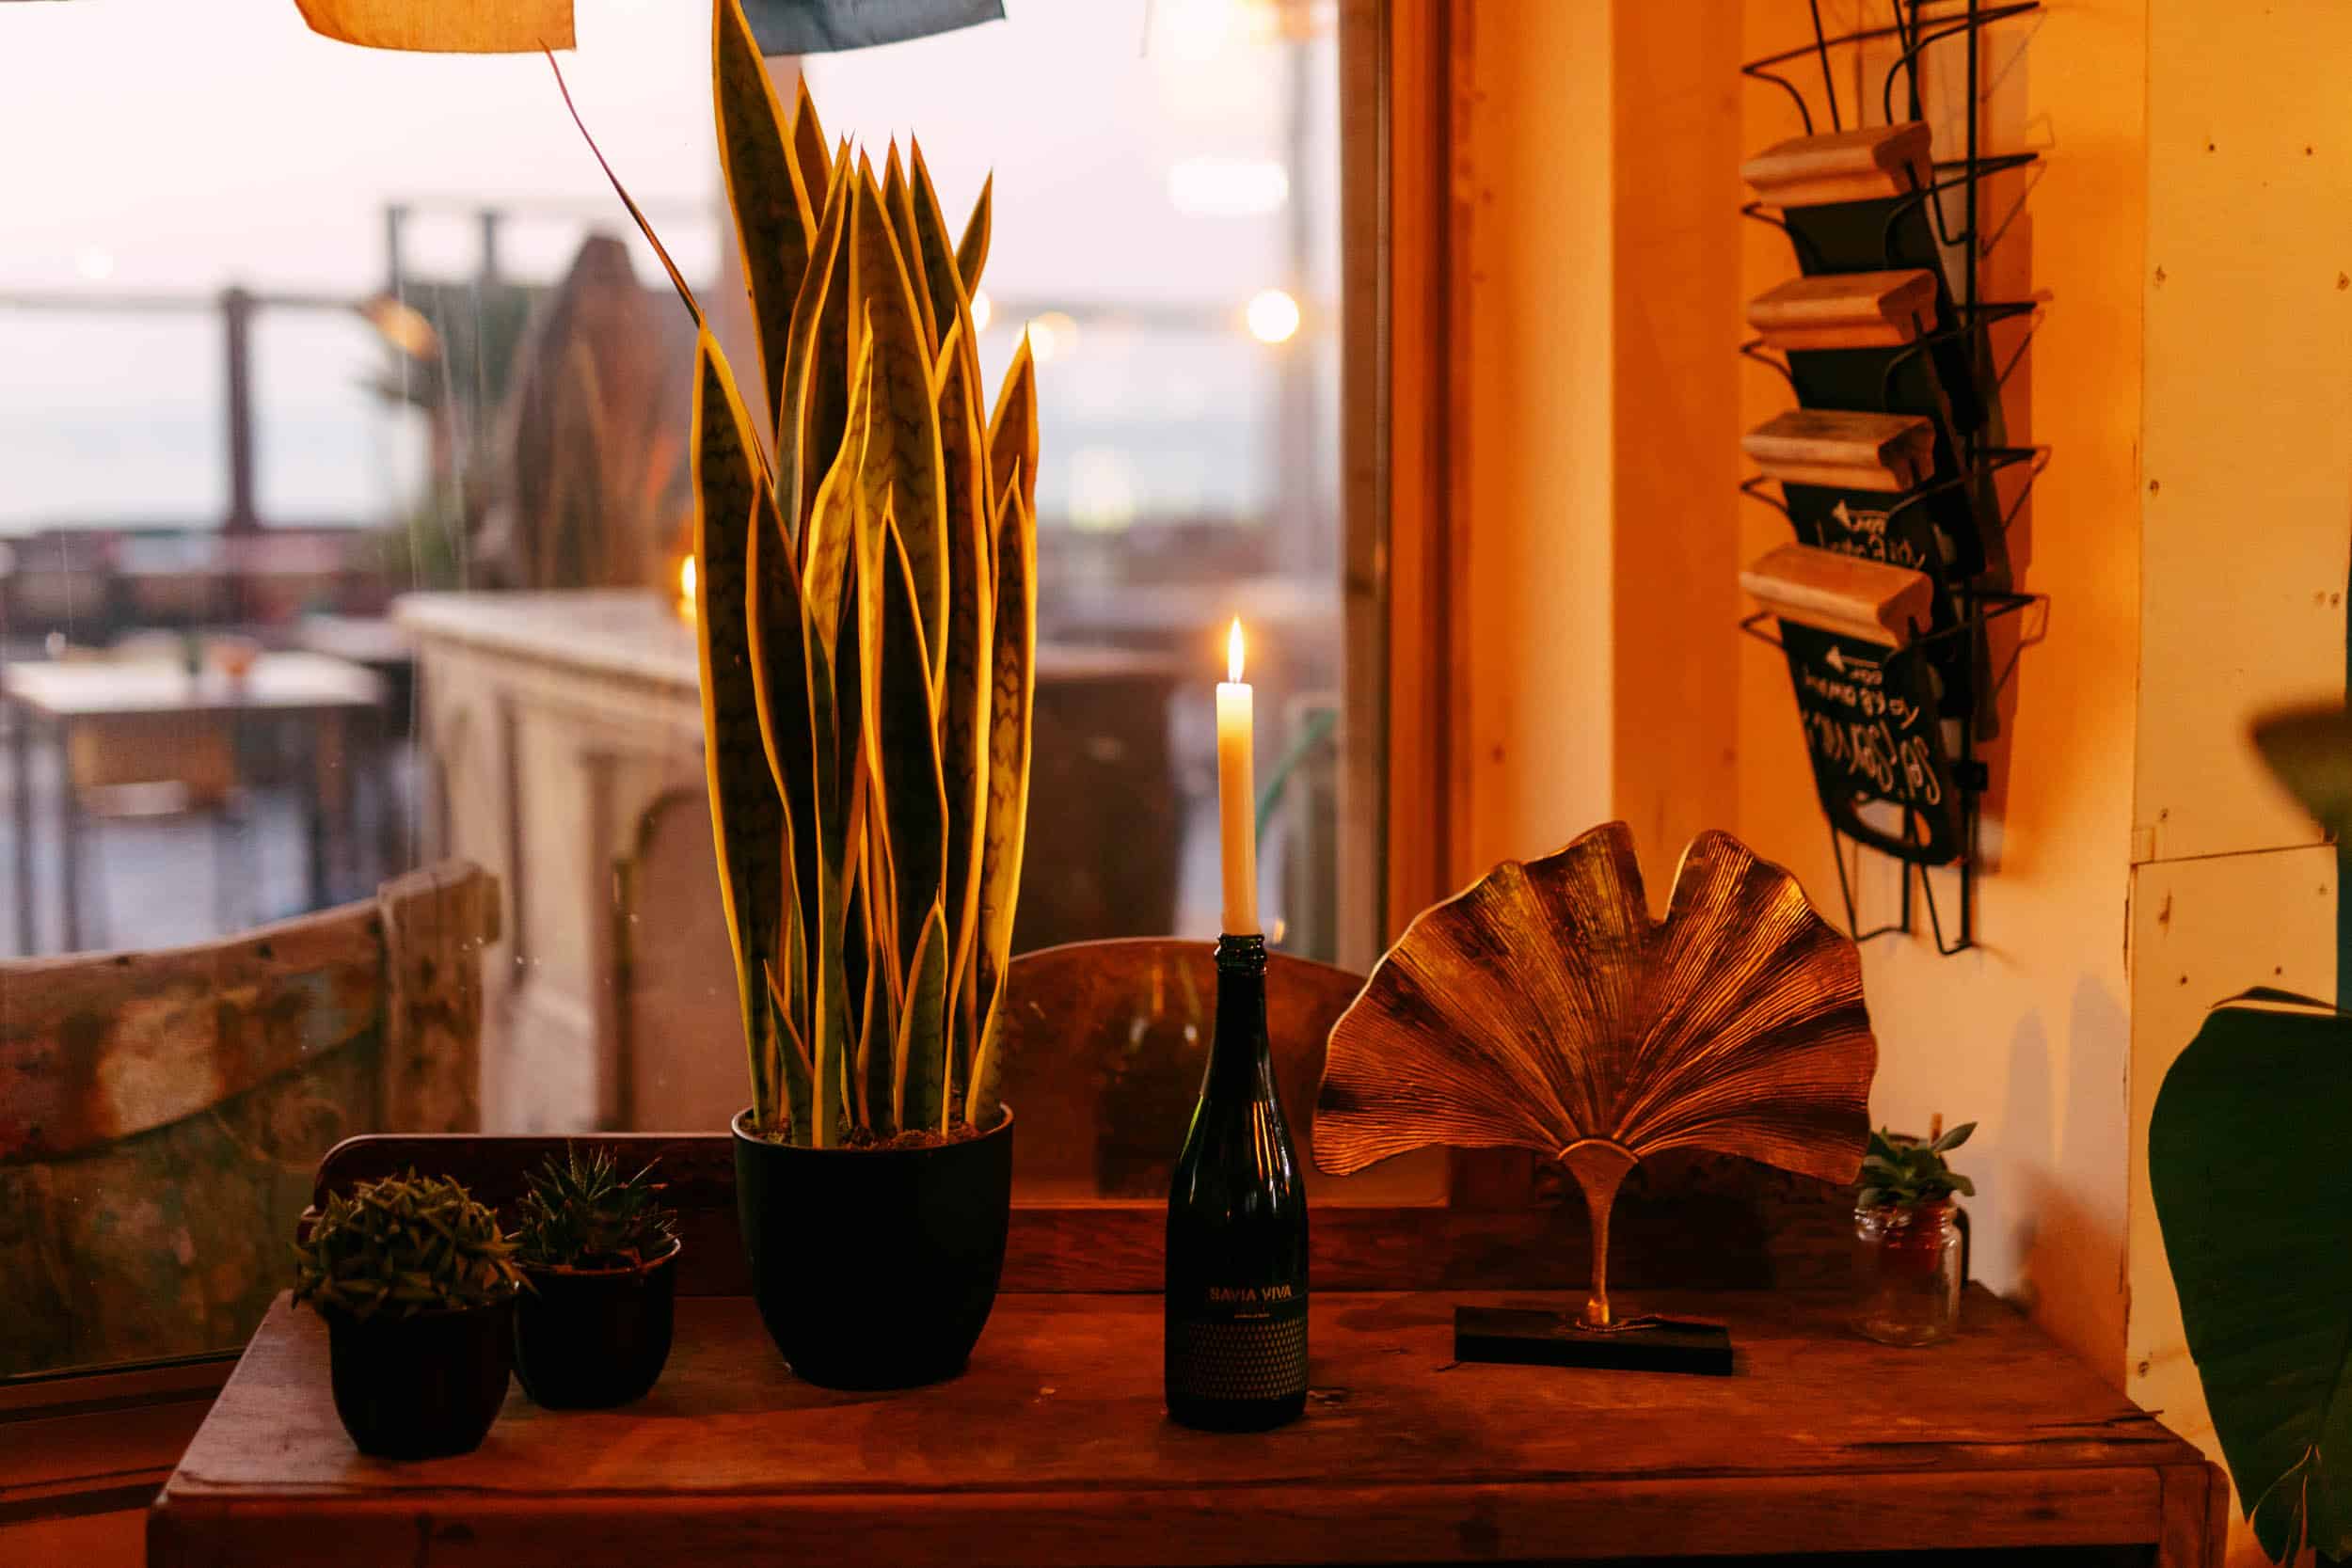 Een kaars op tafel naast een potplant, waardoor een rustige sfeer ontstaat met elementen uit de natuur.